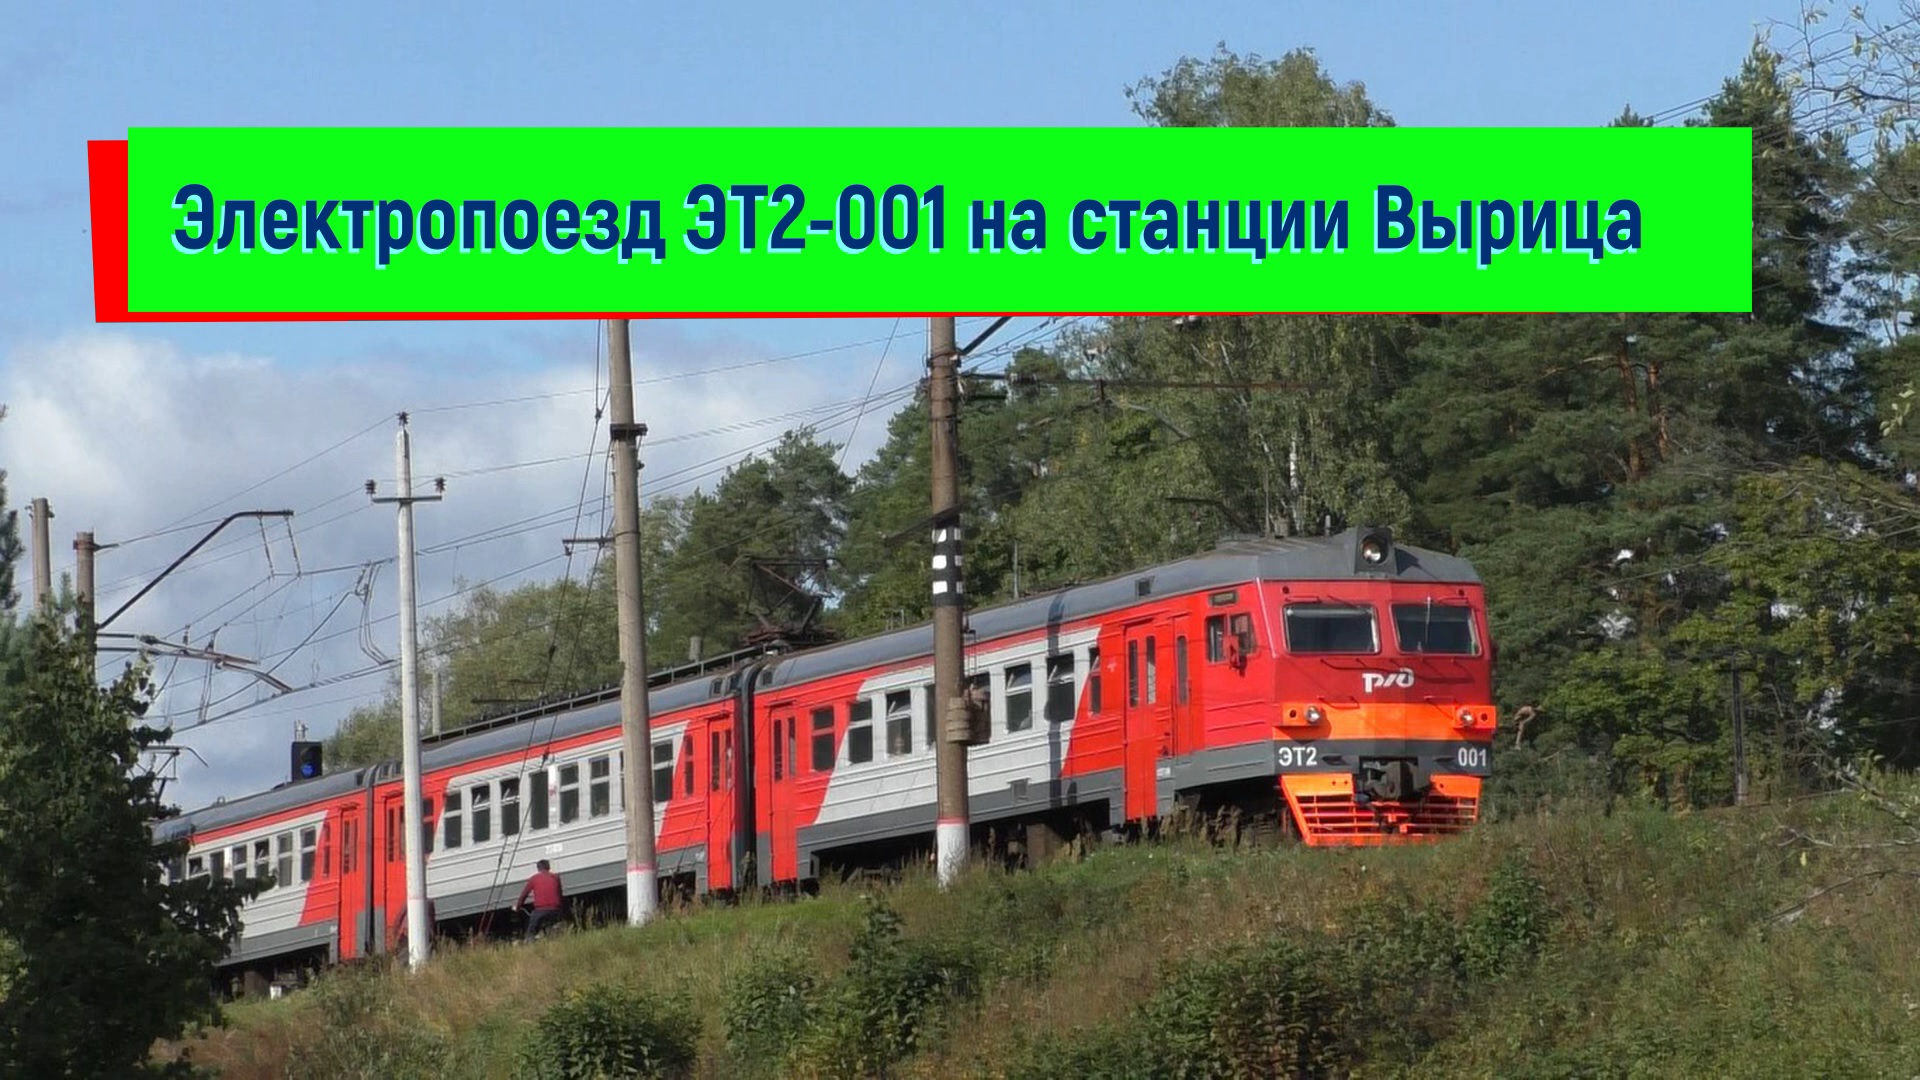 Электропоезд ЭТ2-001 на станции Вырица | ET2-001, Vyritsa station